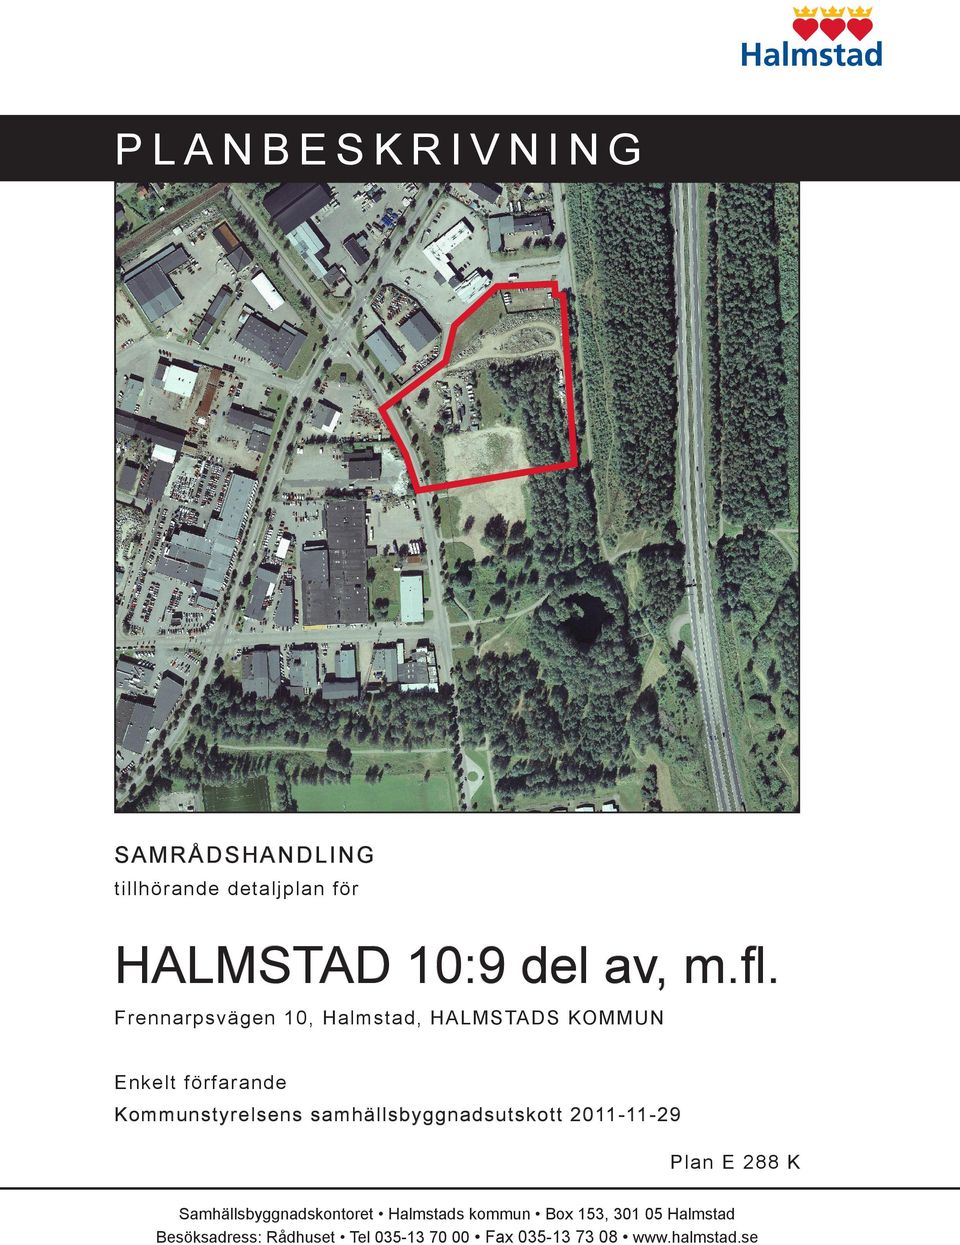 Frennarpsvägen 10, Halmstad, HALMSTADS KOMMUN Enkelt förfarande Kommunstyrelsens